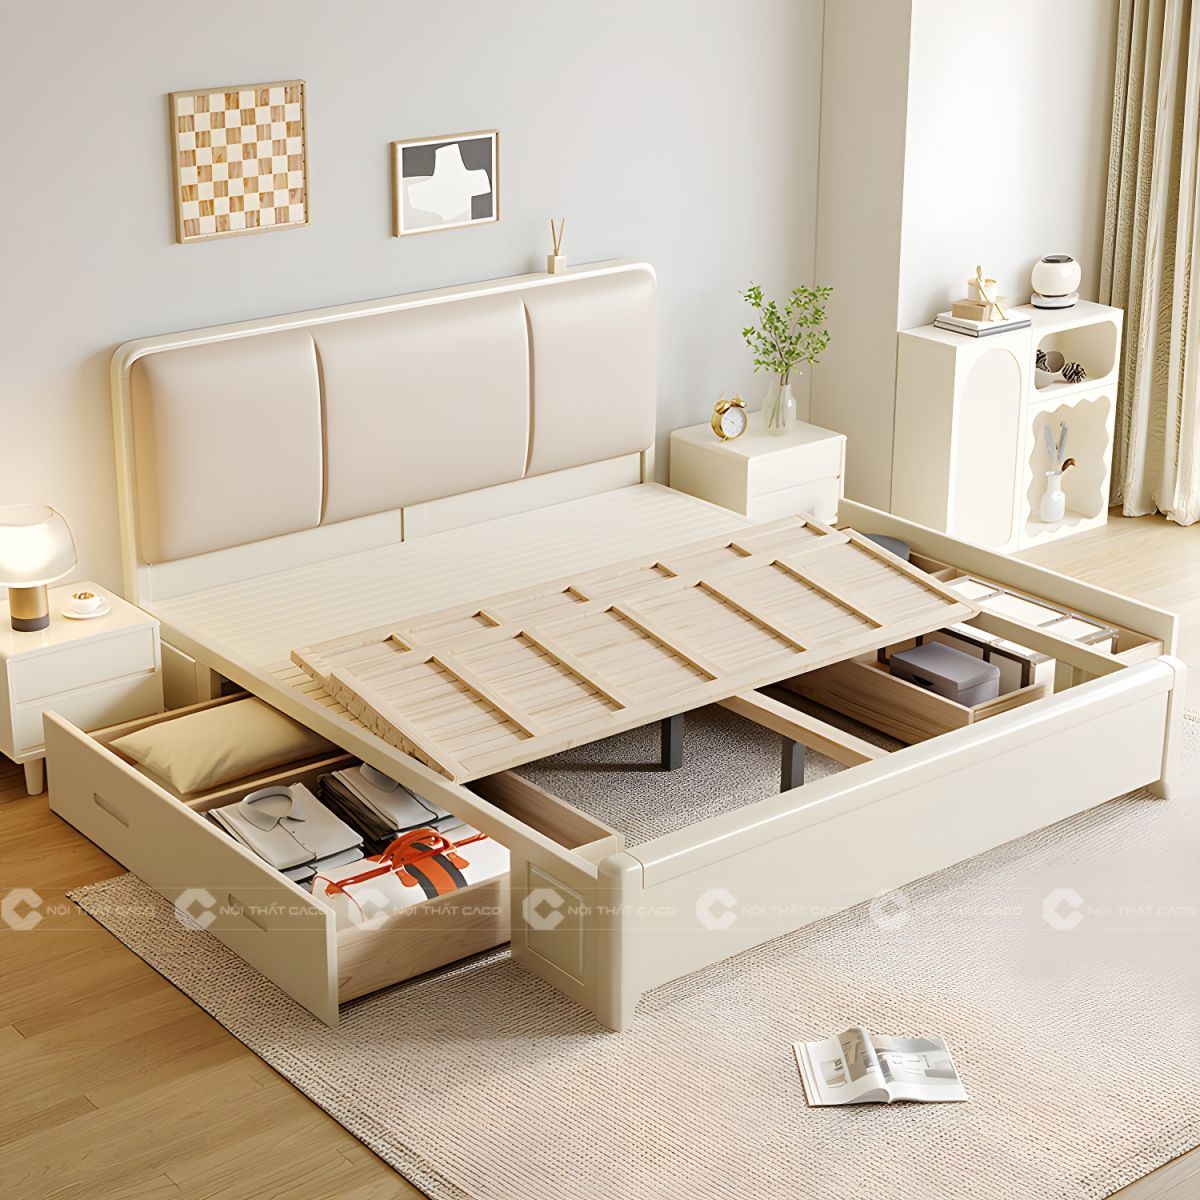 Giường ngủ gỗ tự nhiên màu trắng có hộc kéo thông minh